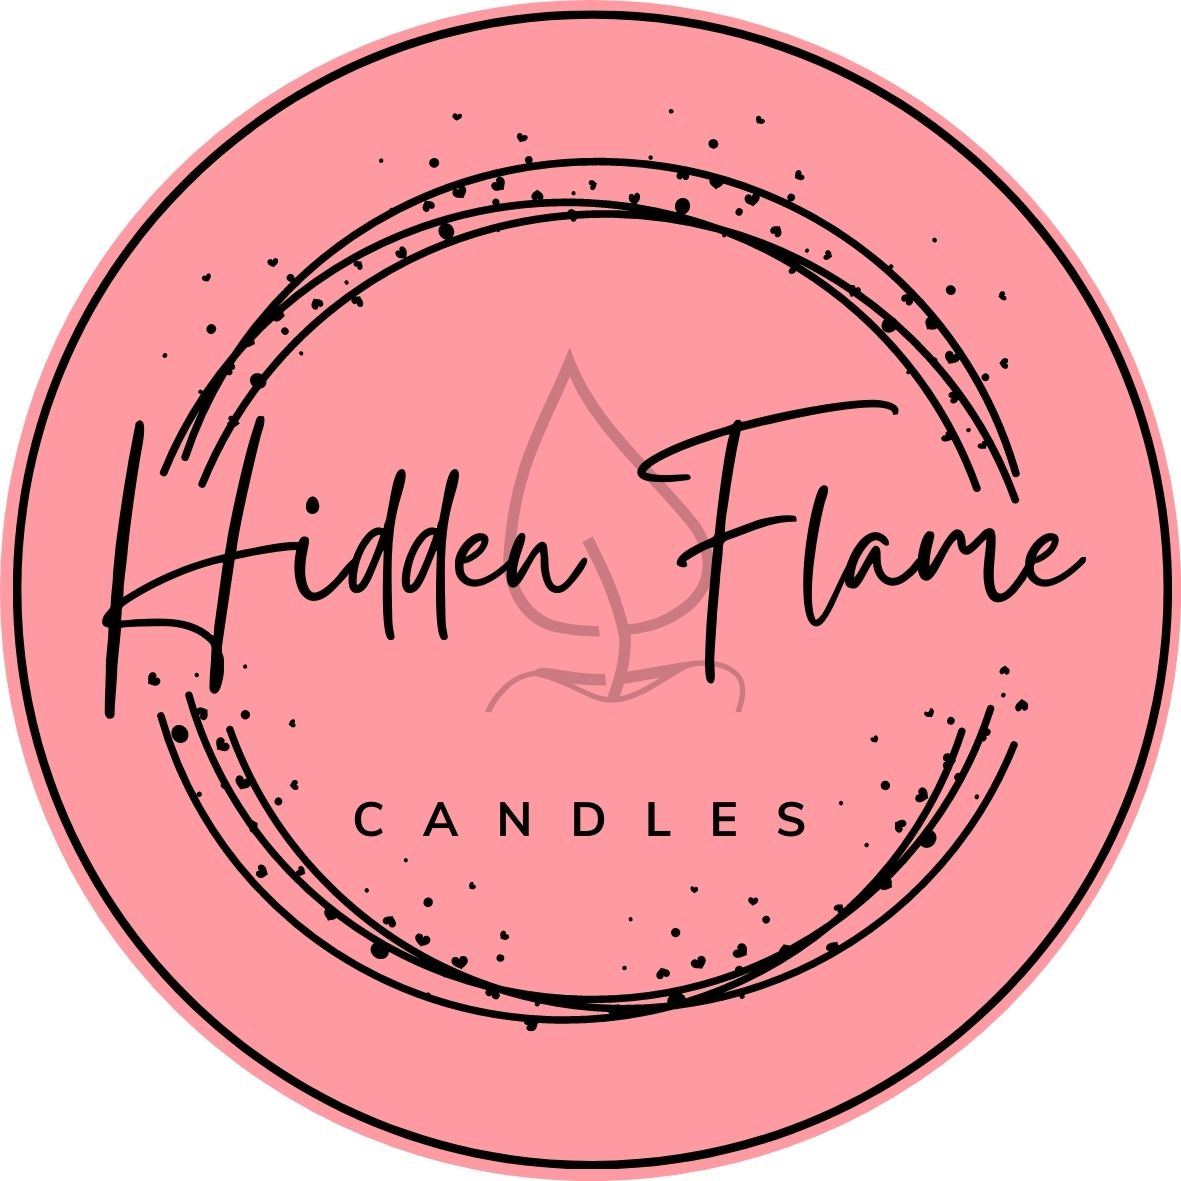 Hidden Flame Candles